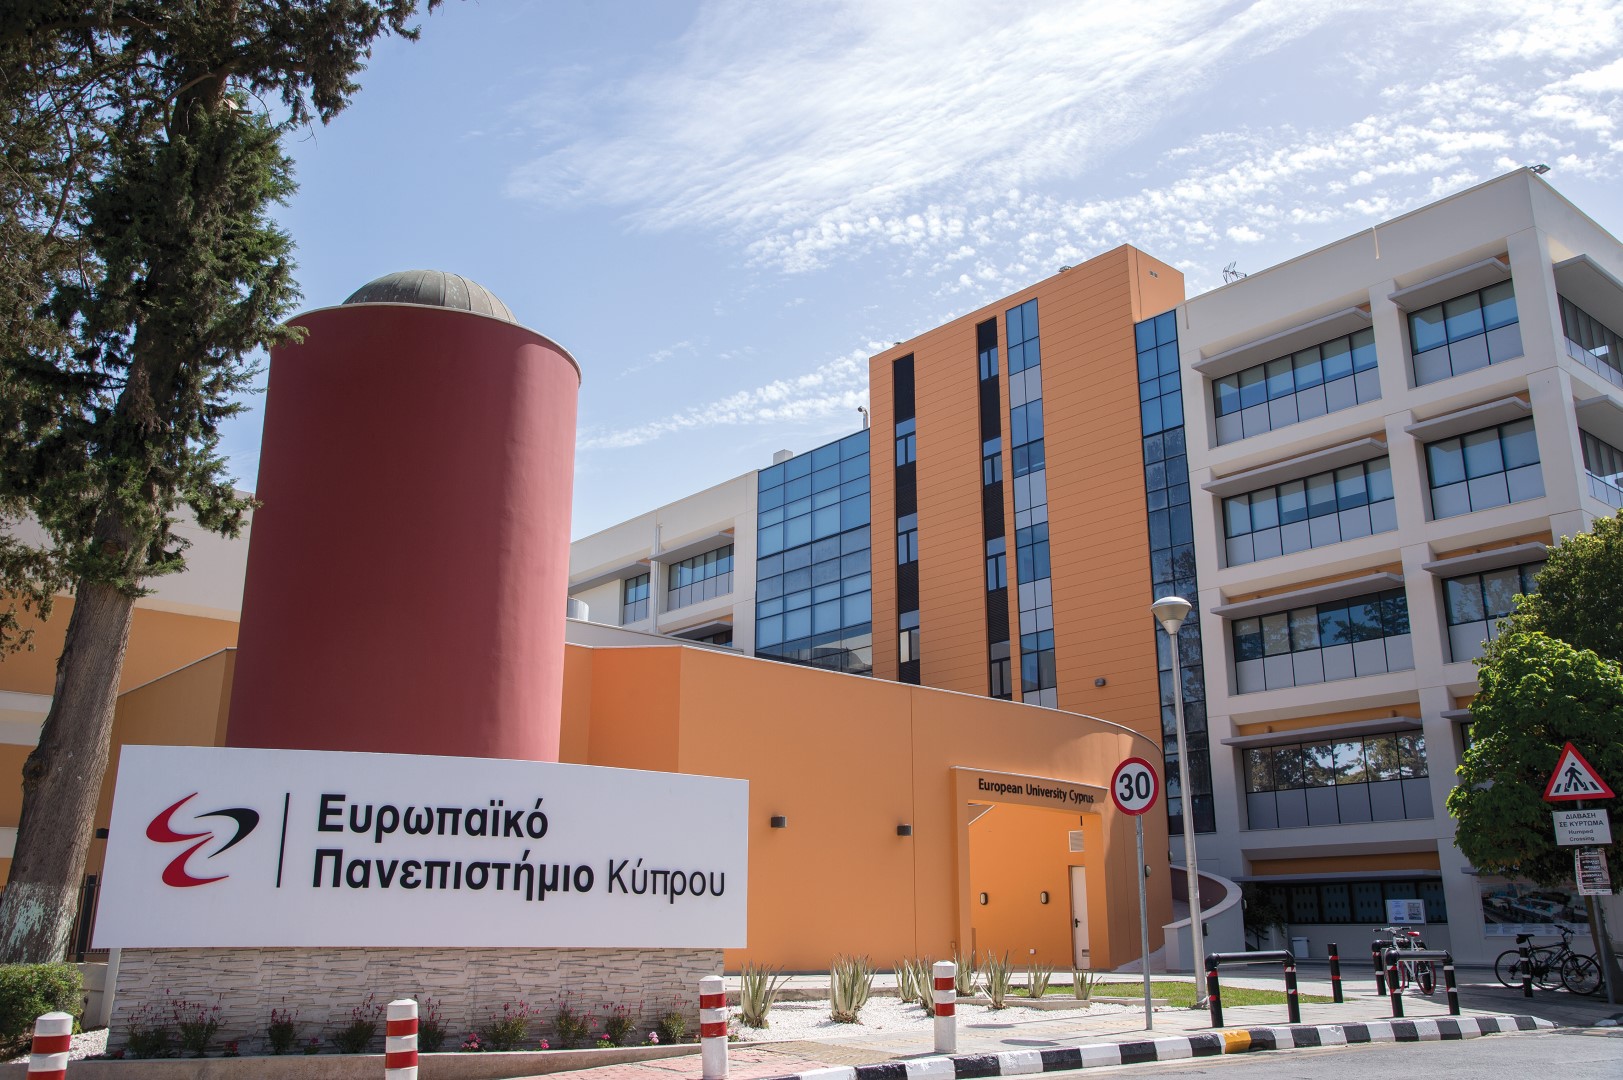 Διαδικτυακή εκδήλωση ενημέρωσης  για τα προγράμματα σπουδών  Ιατρικής, Οδοντιατρικής και Επιστημών Υγείας & Ζωής  του Ευρωπαϊκού Πανεπιστημίου Κύπρου